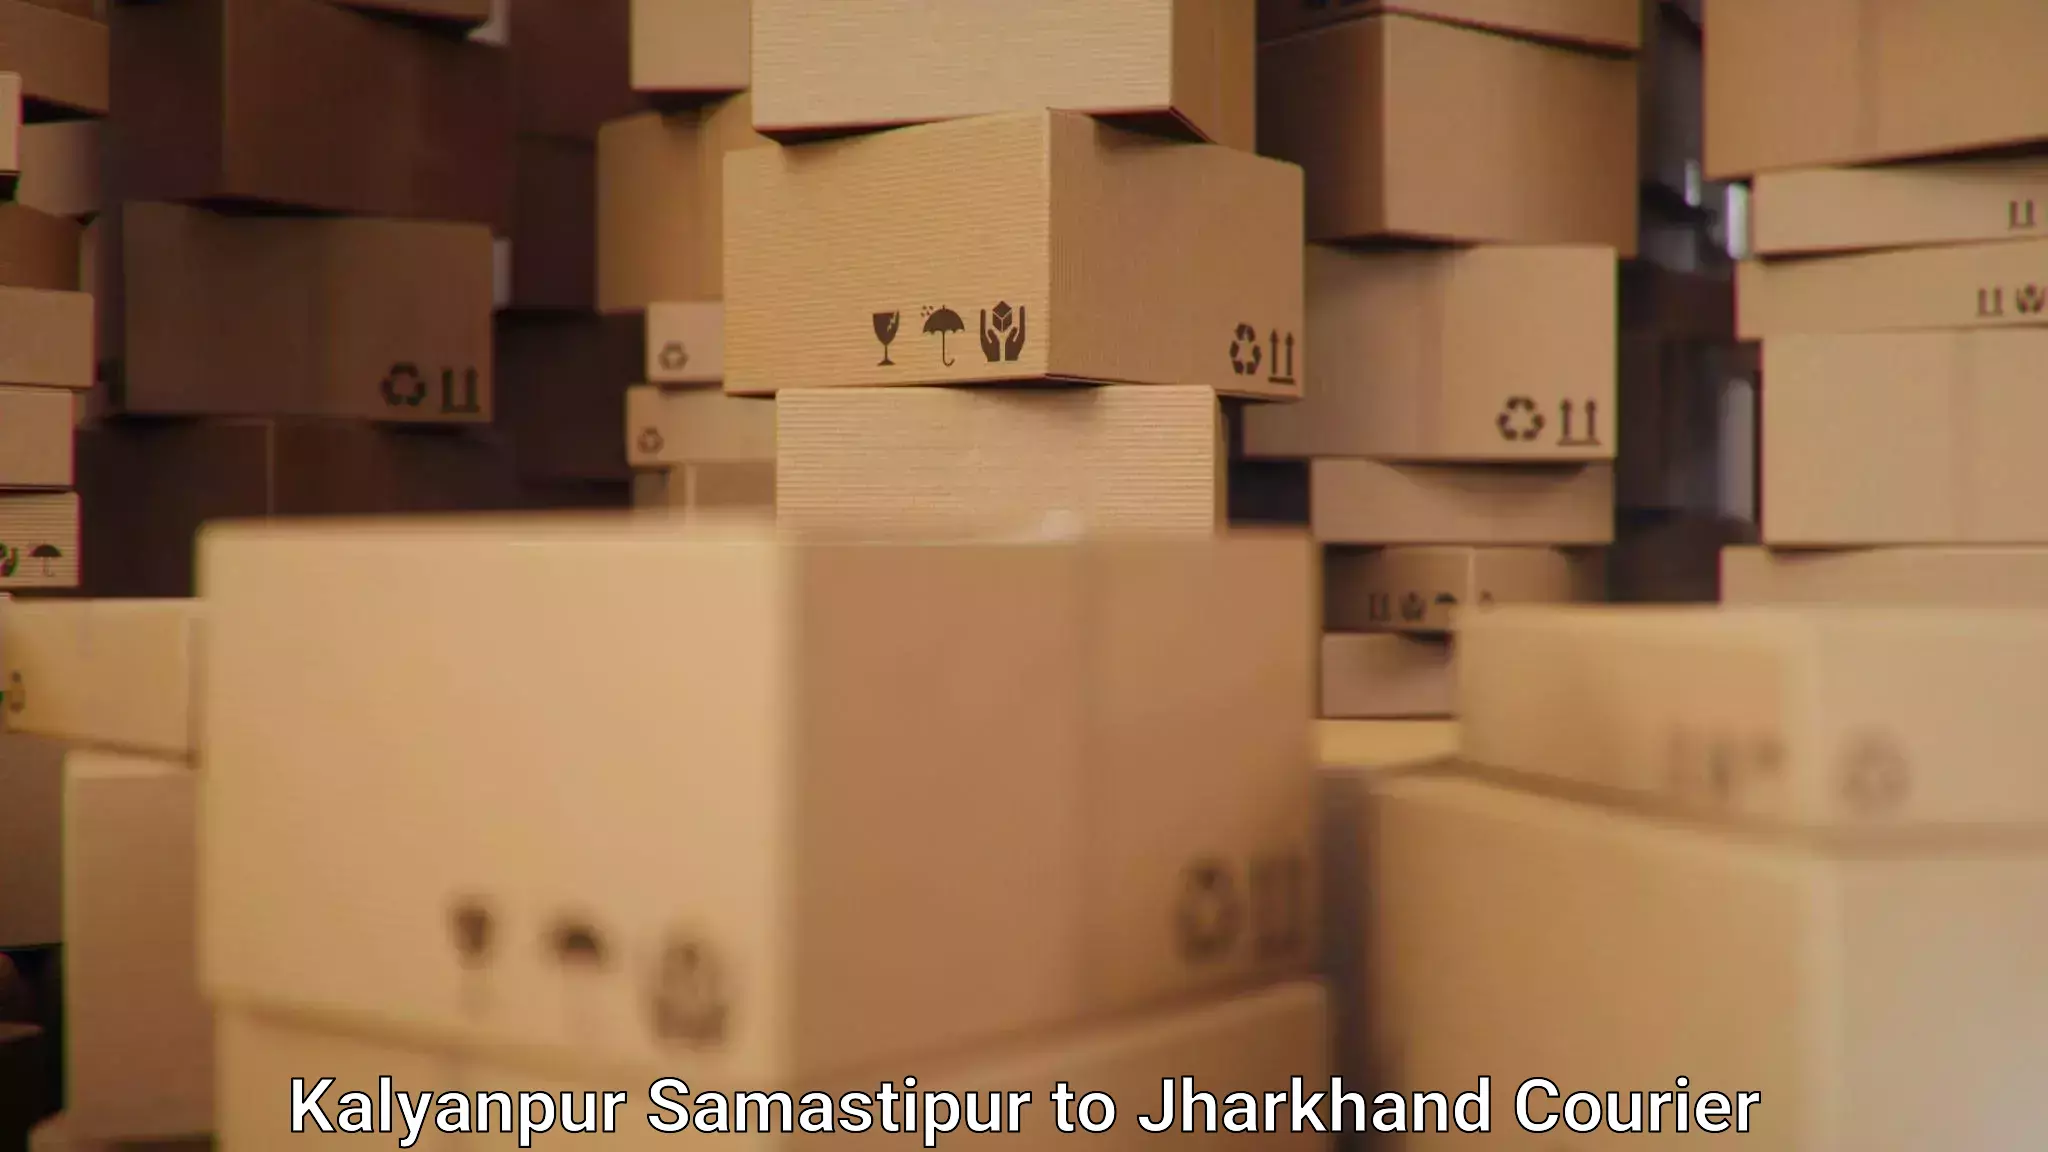 Courier service comparison Kalyanpur Samastipur to Bokaro